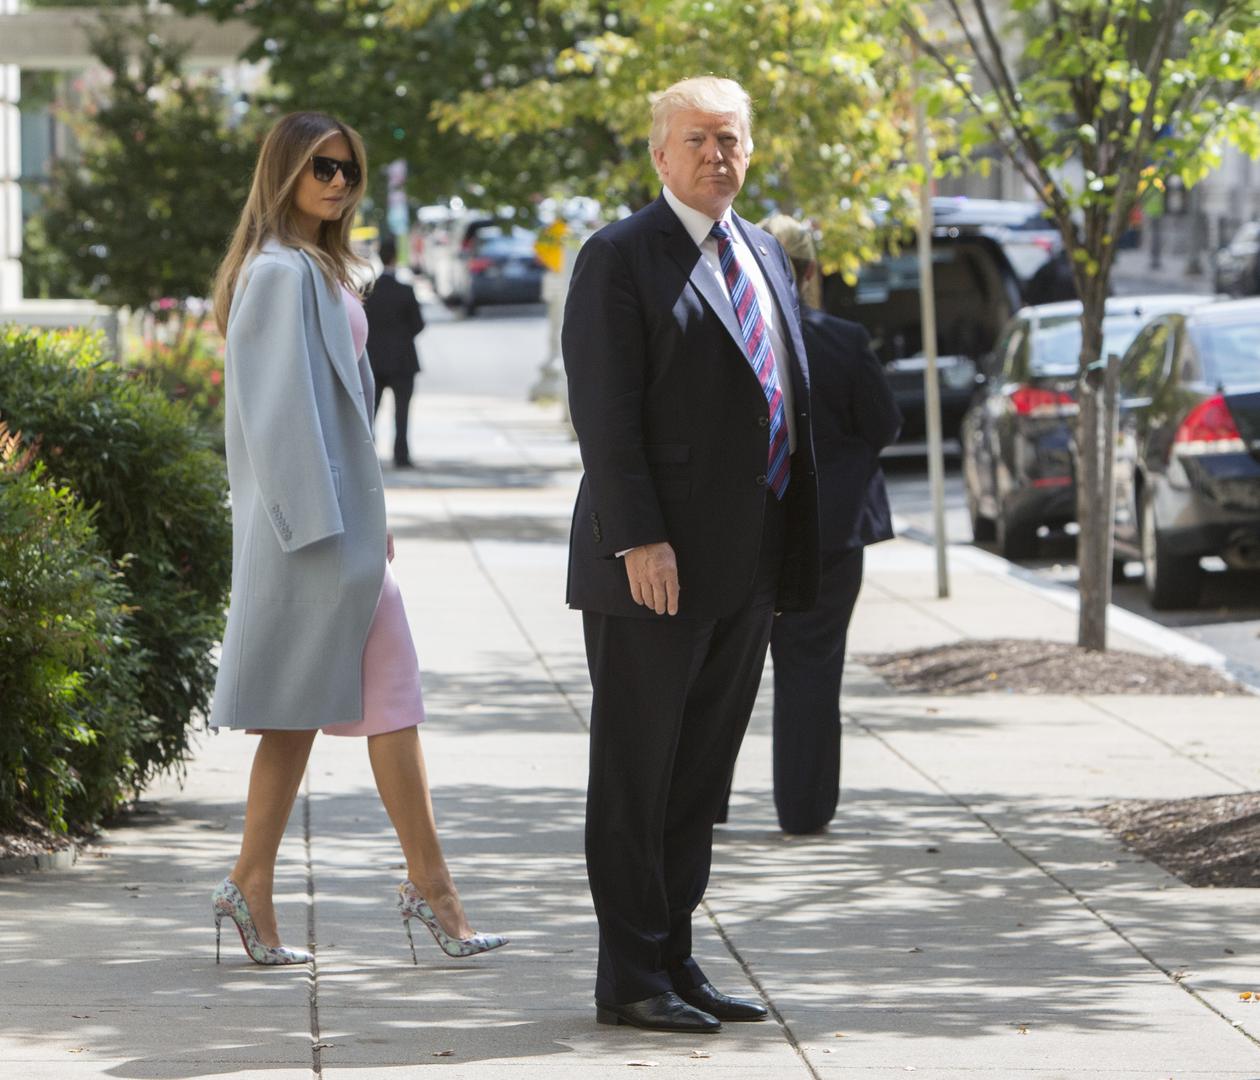 Naime, brojni Amerikanci smatraju kako je Melaniji ovo idealan način da izbjegne  držanje za ruku s Trumpom jer rukama pridržava kaput.